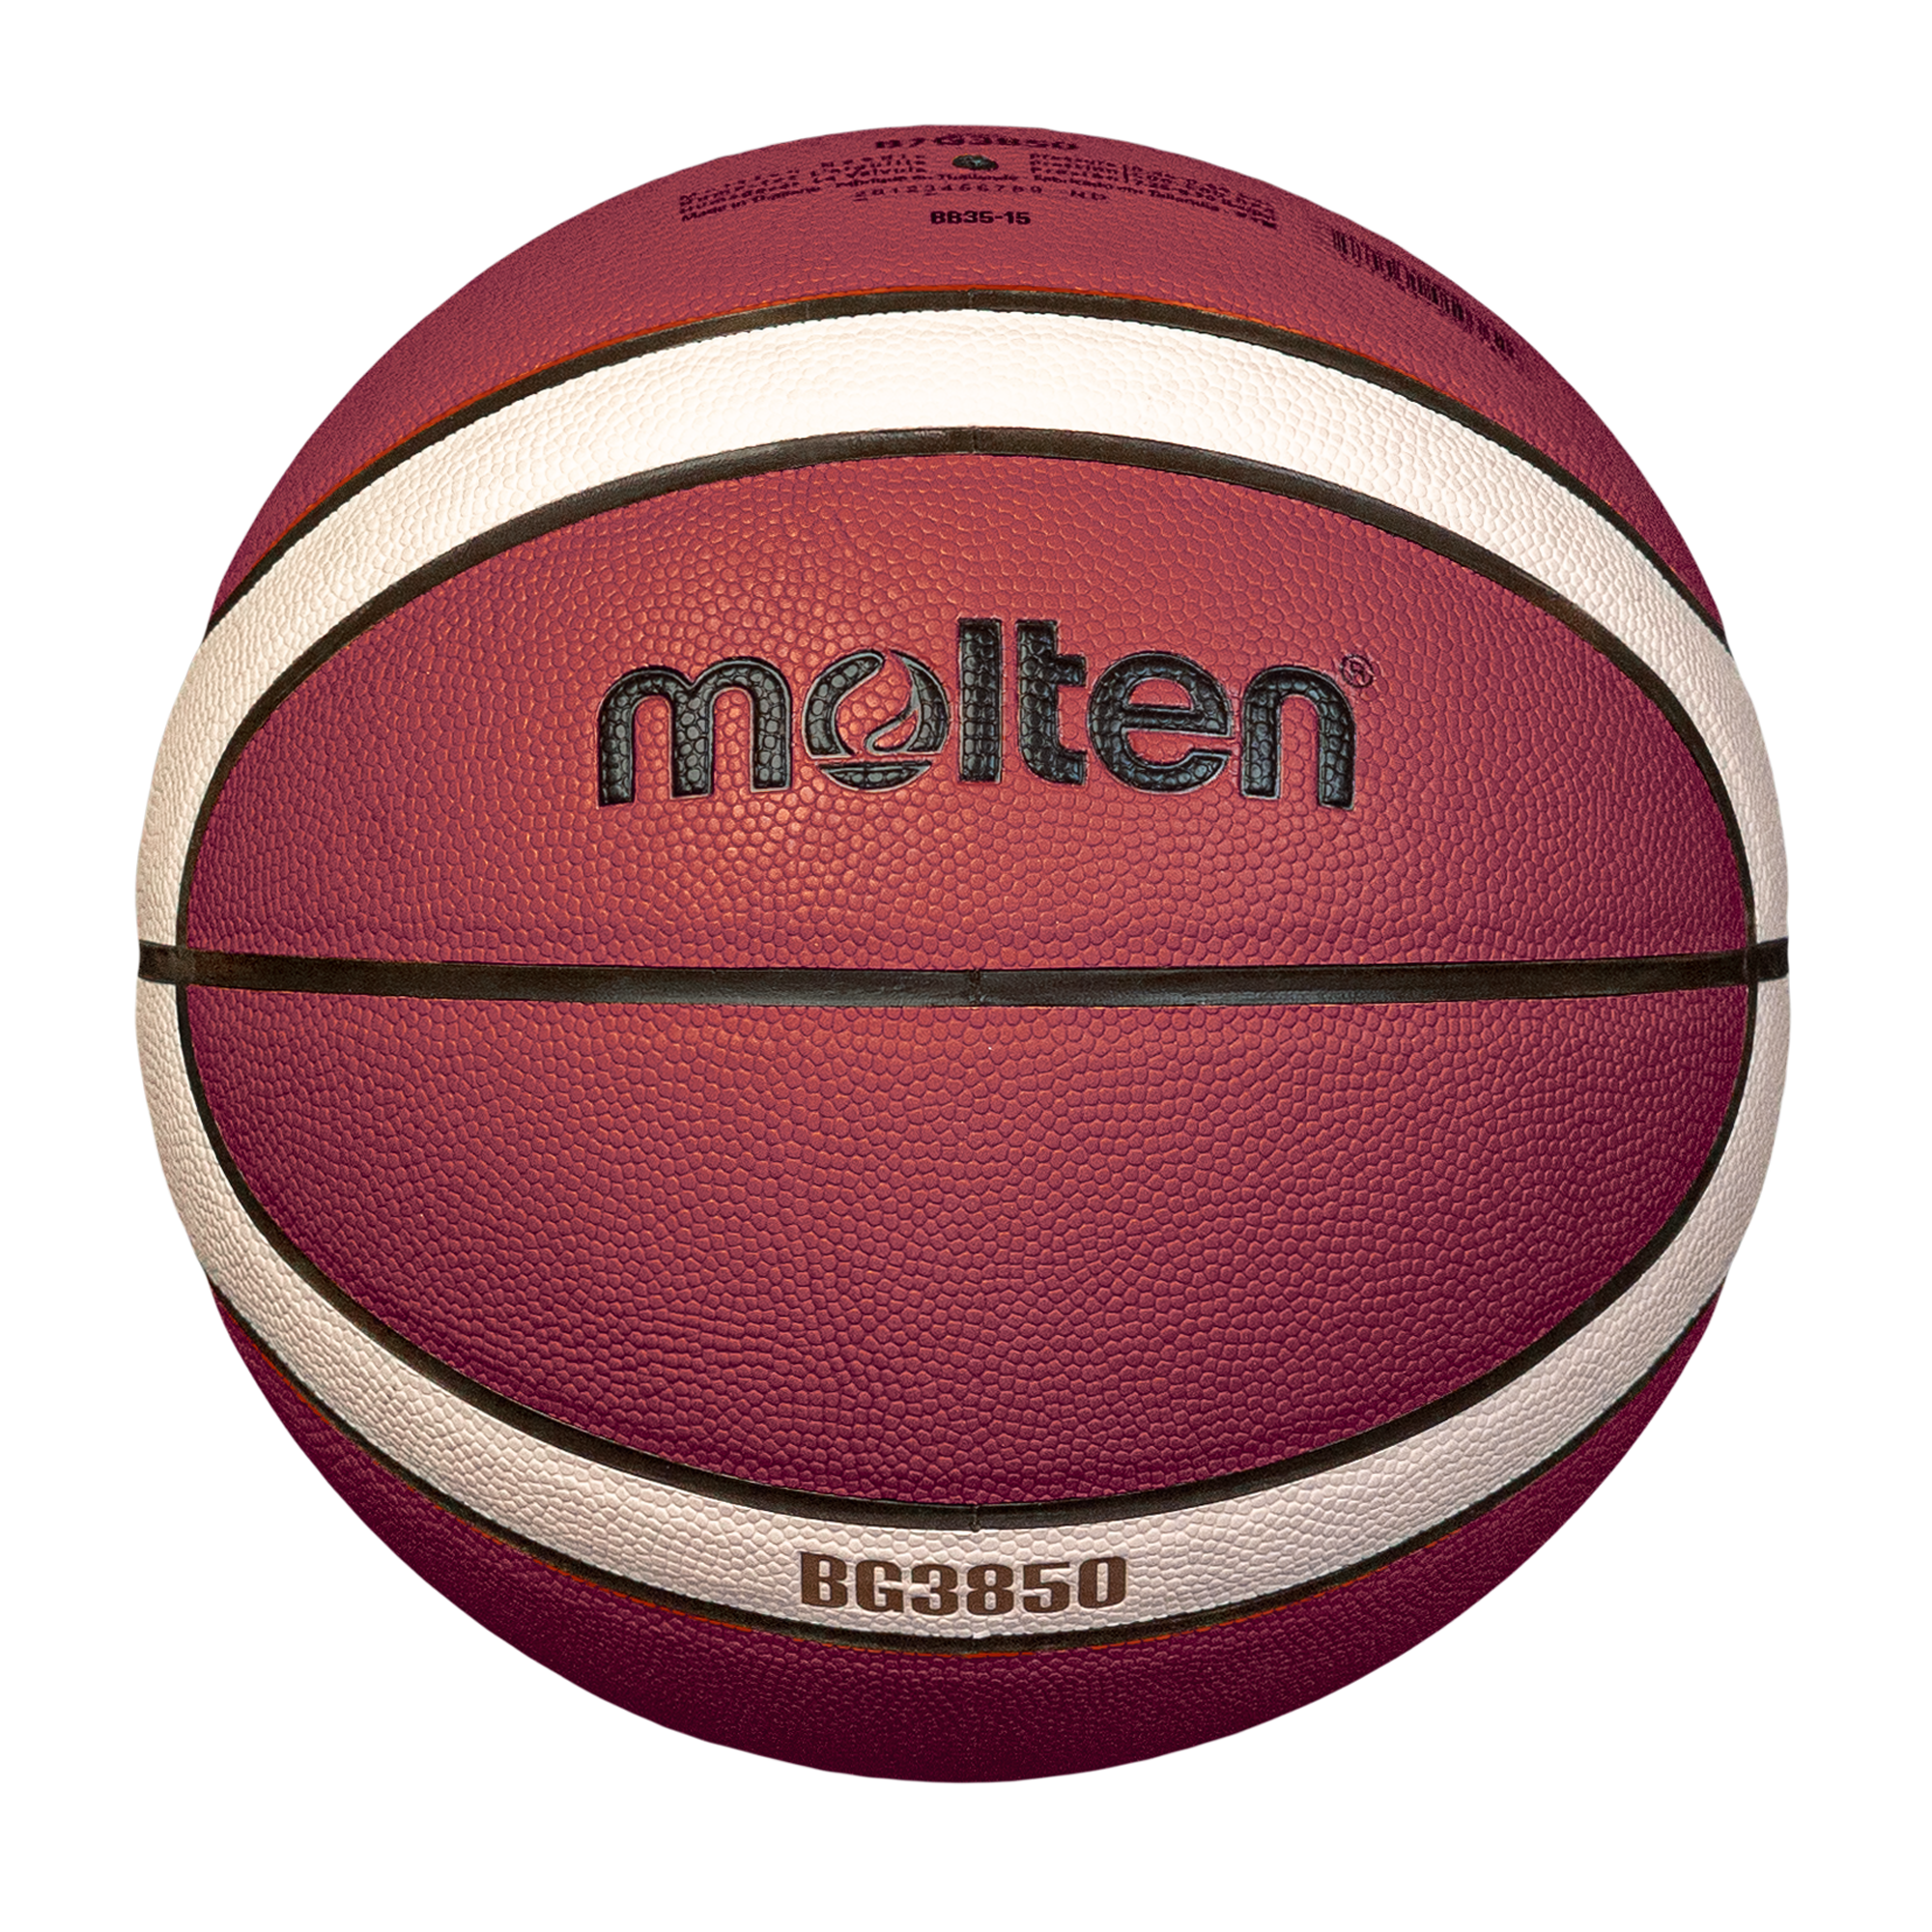 molten-basketball-B7G3850-S1_1.png